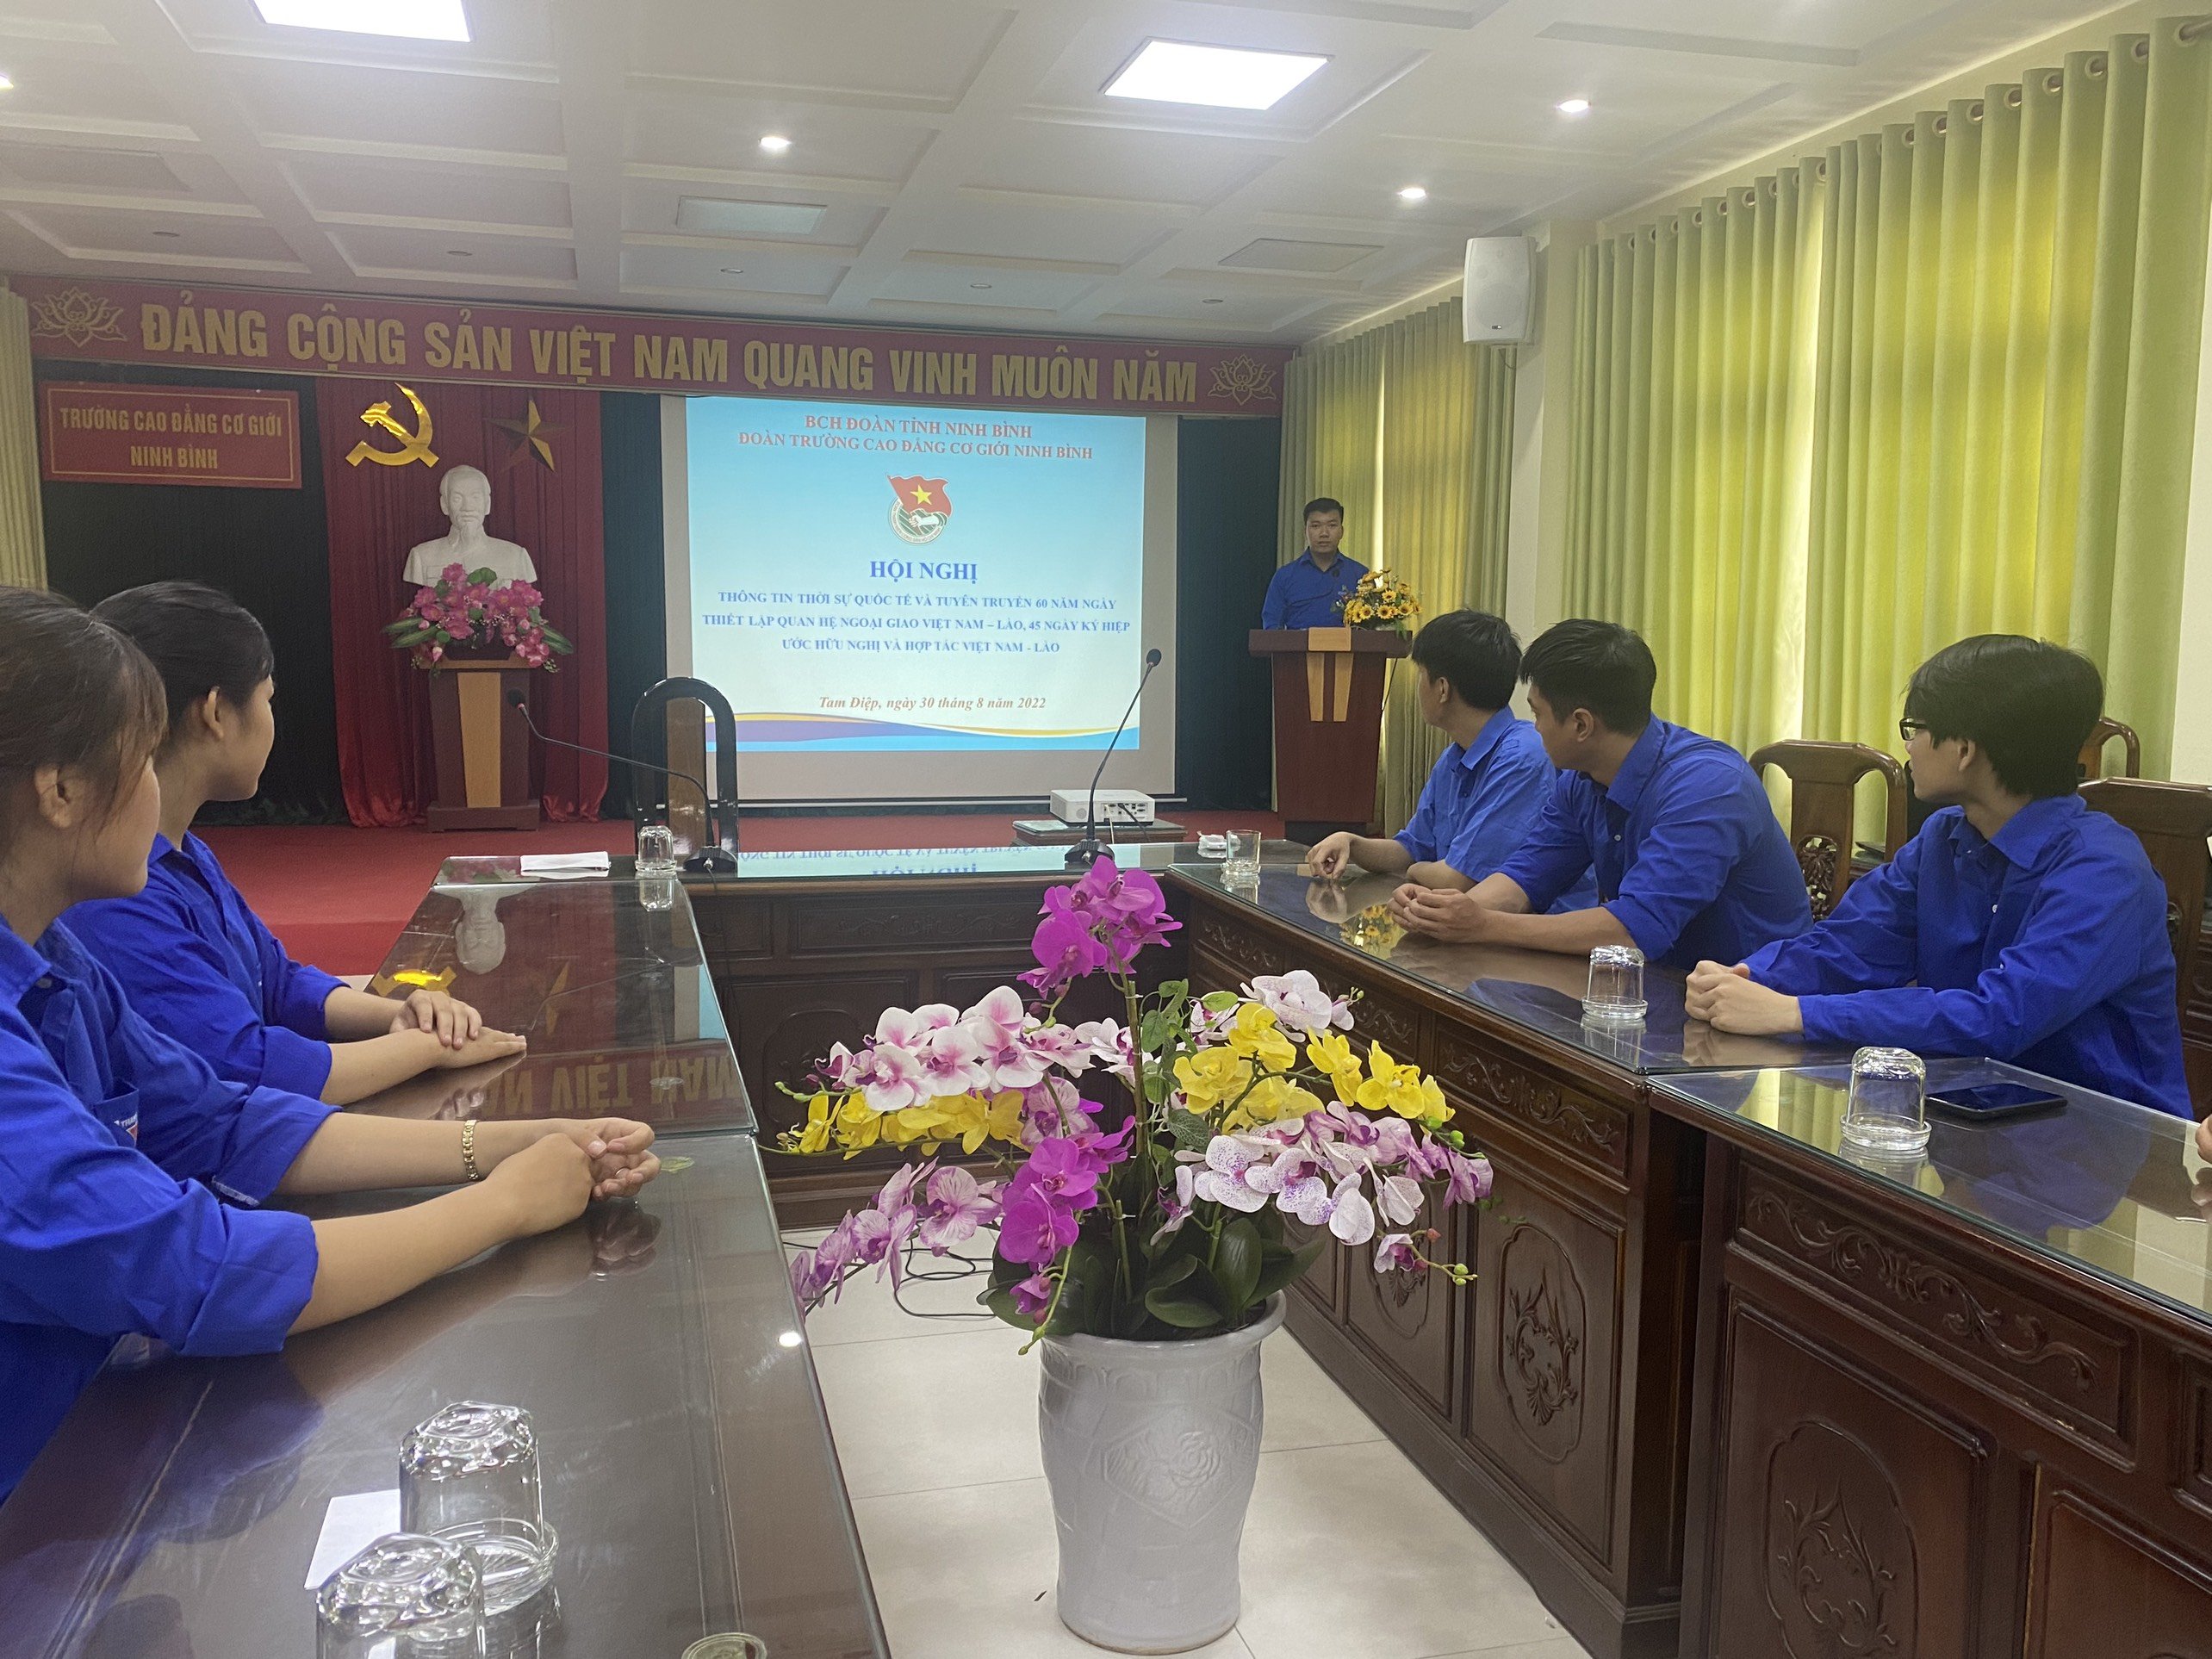 Đoàn trường Cao đẳng Cơ giới Ninh Bình tổ chức hội nghị tuyên truyền thông tin thời sự quốc tế và tuyên truyền 60 năm ngày thiết lập quan hệ ngoại giao Việt Nam – Lào, 45 năm ngày ký hiệp ước hữu nghị và hợp tác Việt Nam - Lào.